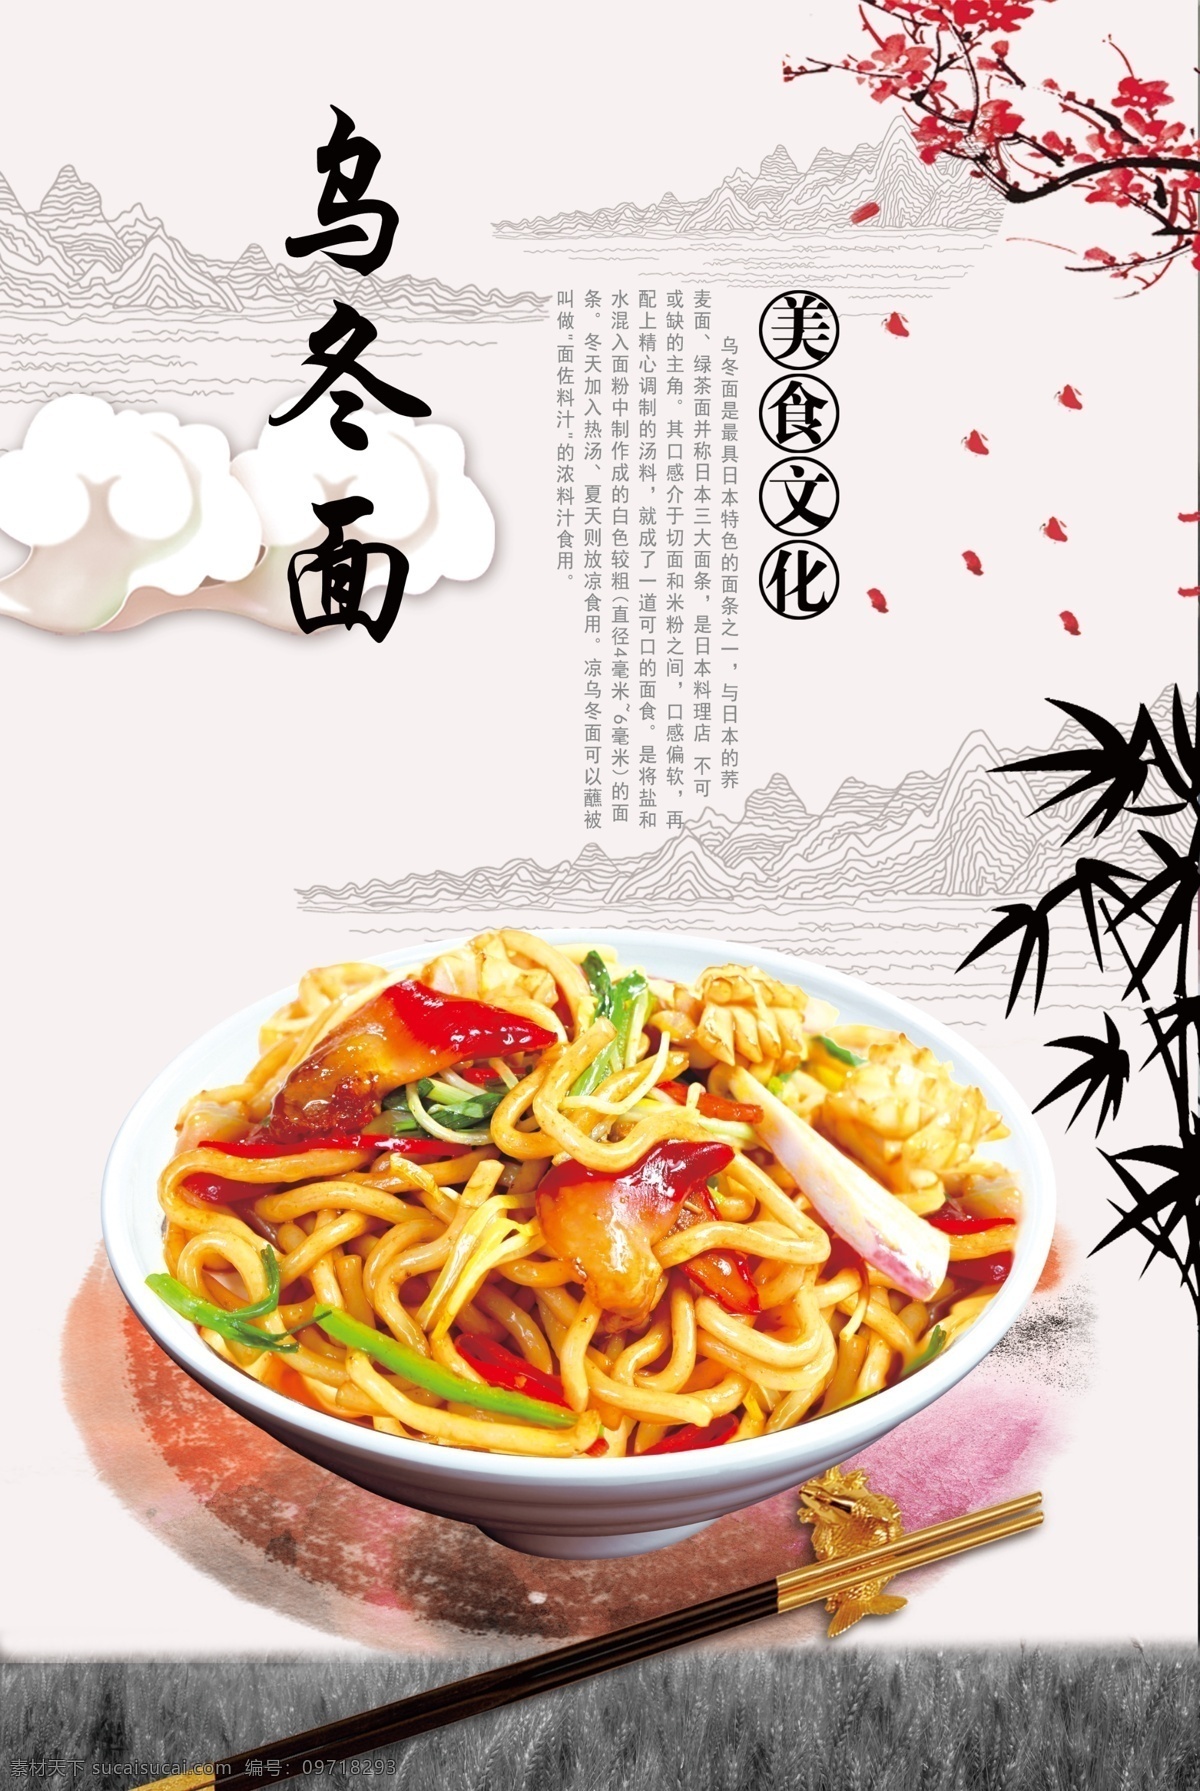 乌冬面 梅花 祥云 古典 竹子 面食 日本面食 最具 日本特色 美食 生活百科 餐饮美食